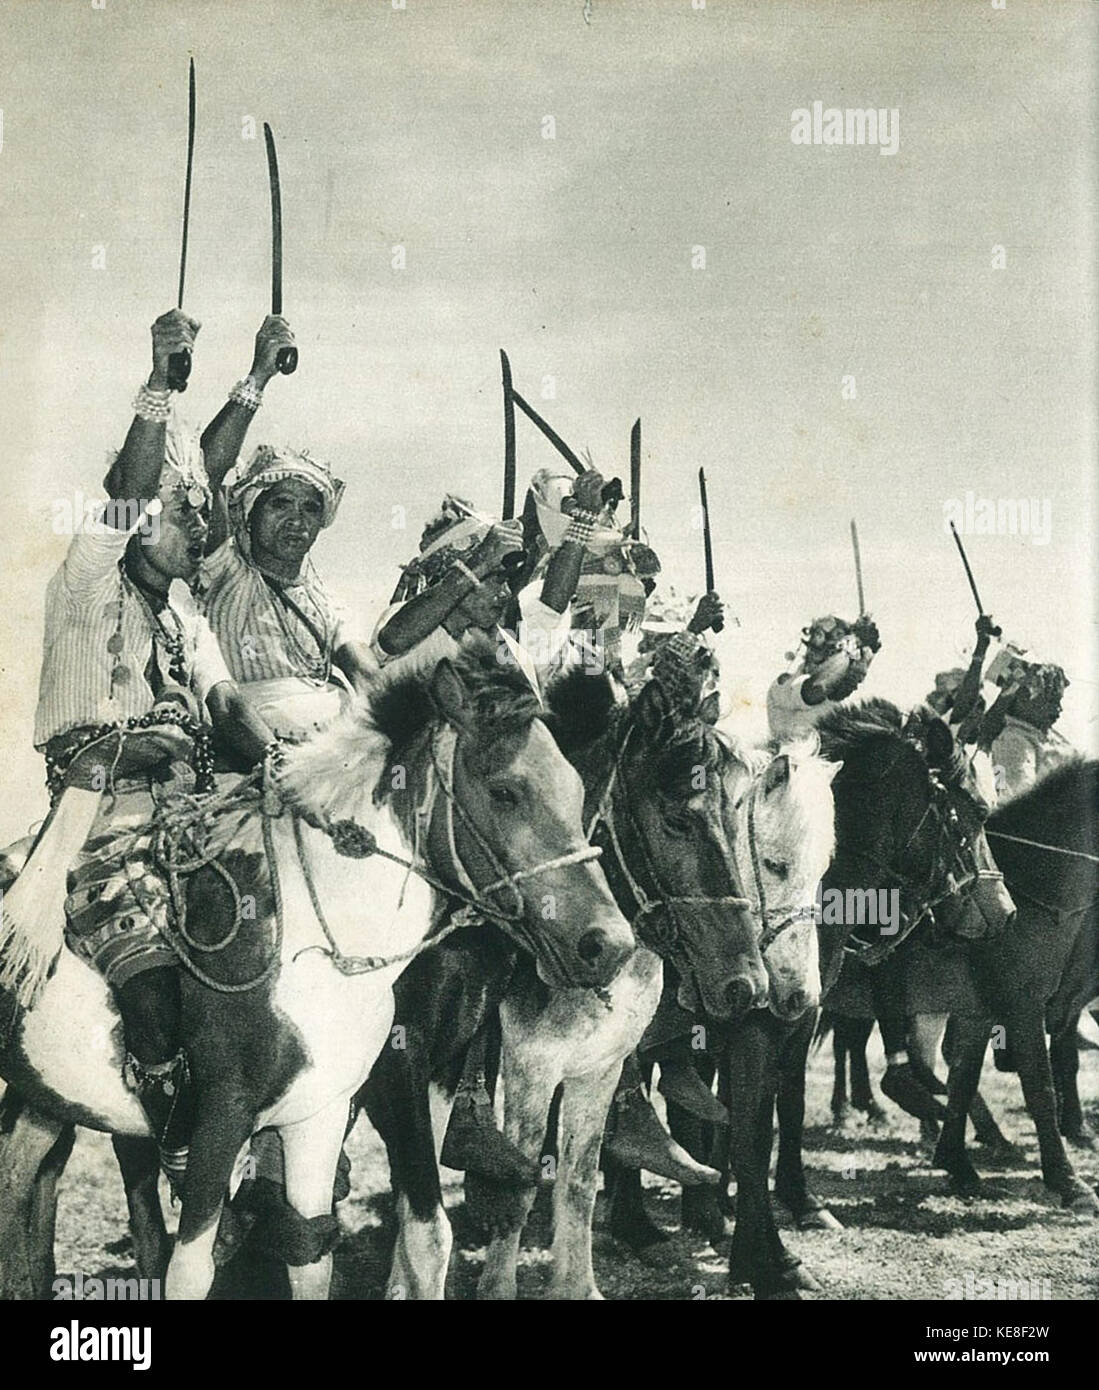 Timorese warriors, Indonesia Tanah Airku, p66 Stock Photo